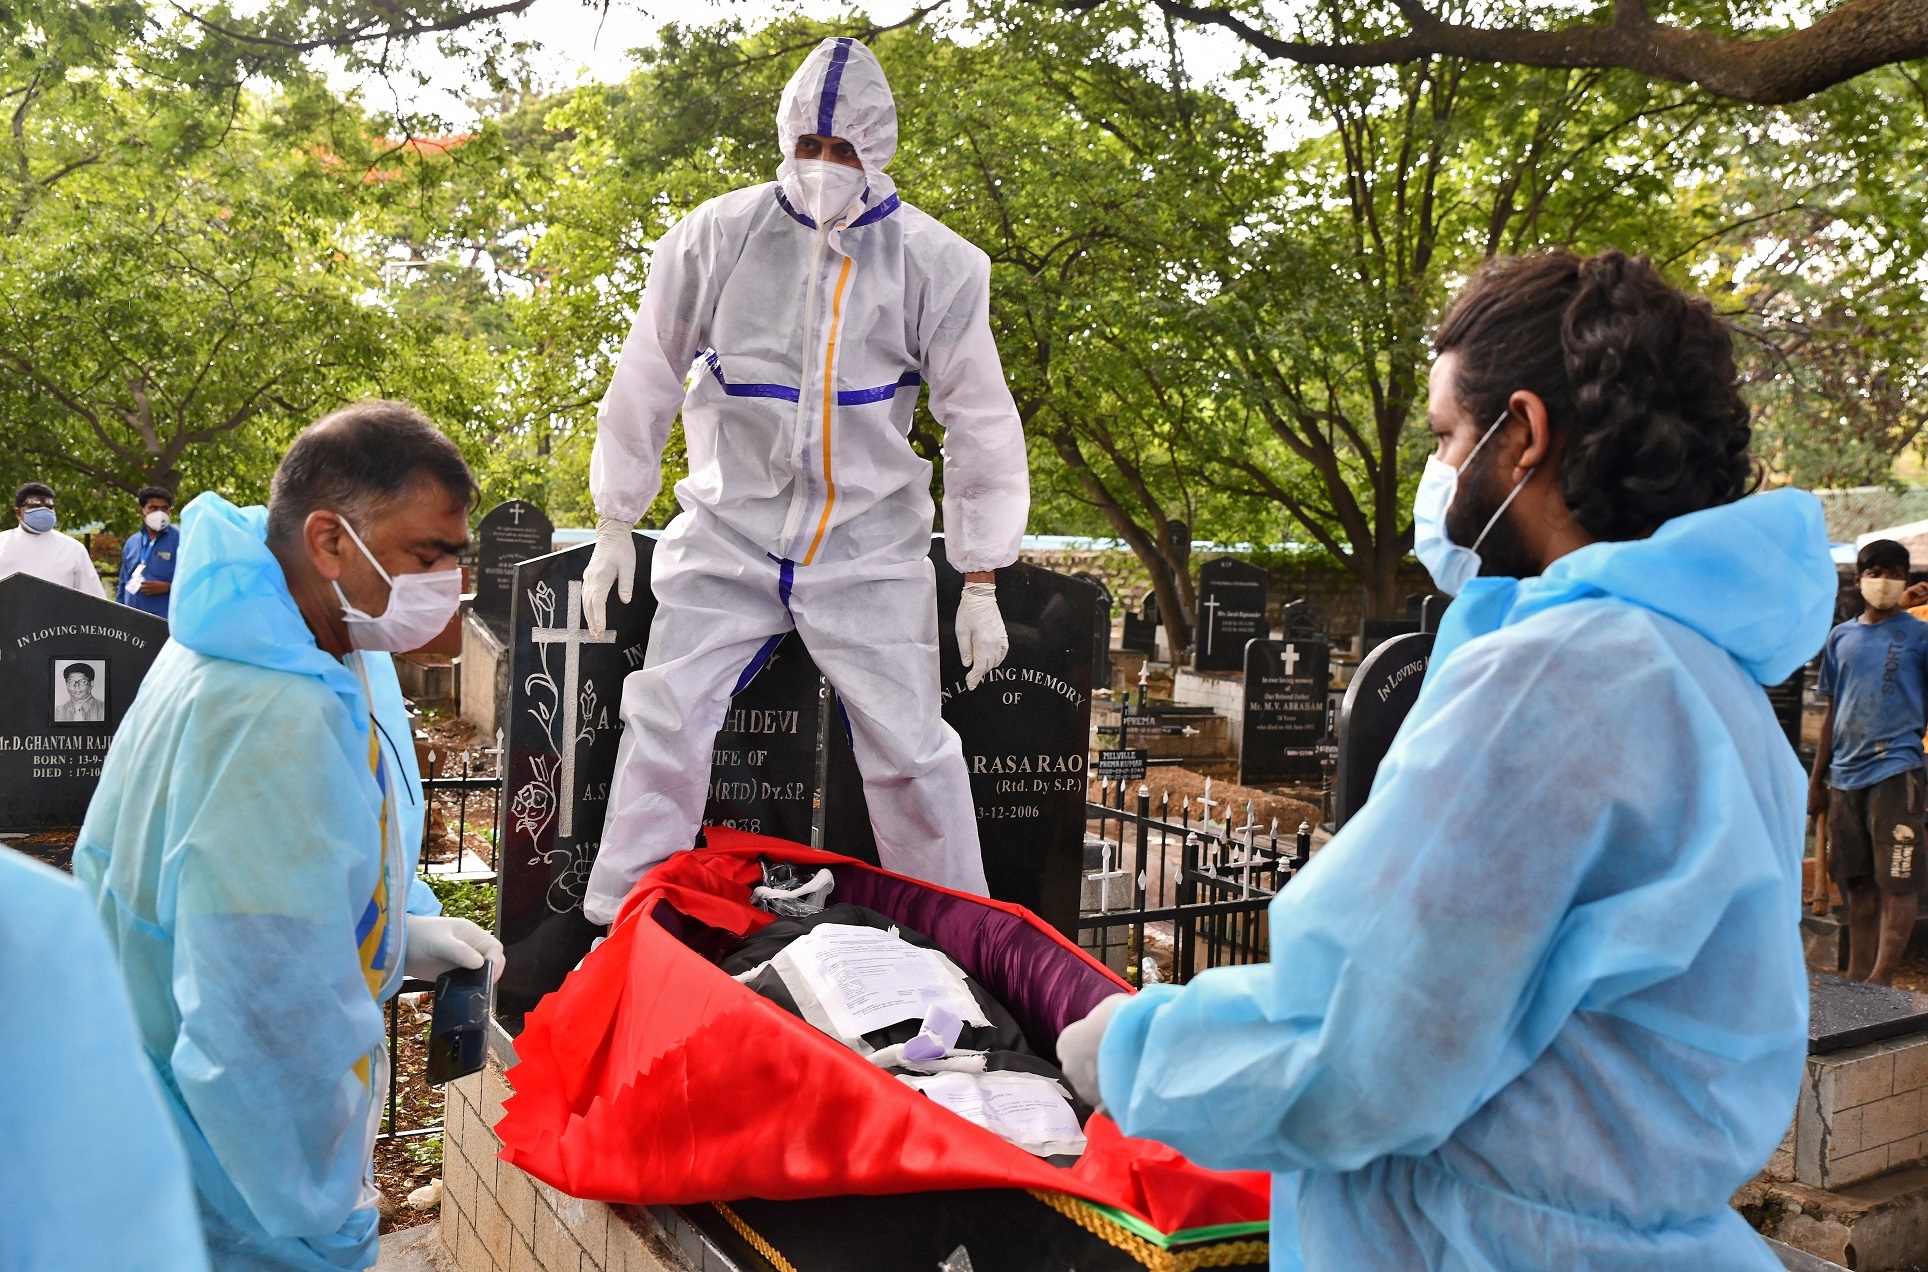 متطوع يرتدي معدات الحماية الشخصية ويستعد لدفن جثة شخص مات من فيروس كورونا، في مقبرة في بنغالورو، الهند، 18 أيار/مايو 2021 (رويترز)